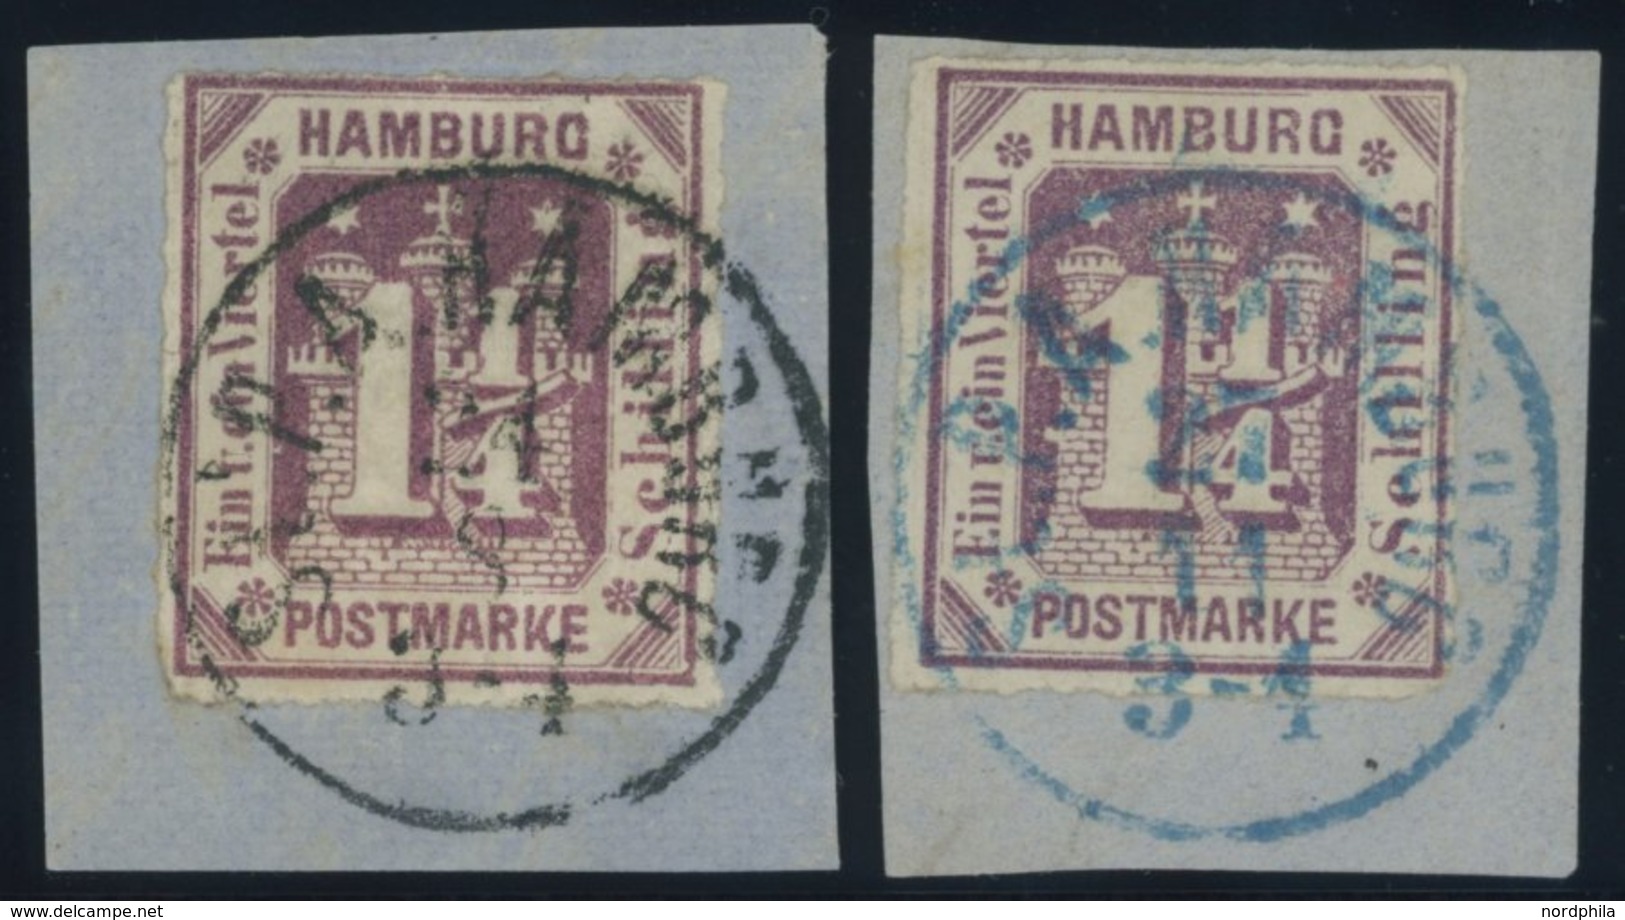 HAMBURG 20a BrfStk, 1866, 11/4 S. Dunkelbraunviolett Mit K1 St.P.A. HAMBURG In Schwarz Und Blau, 2 Kabinettbriefstücke - Hamburg